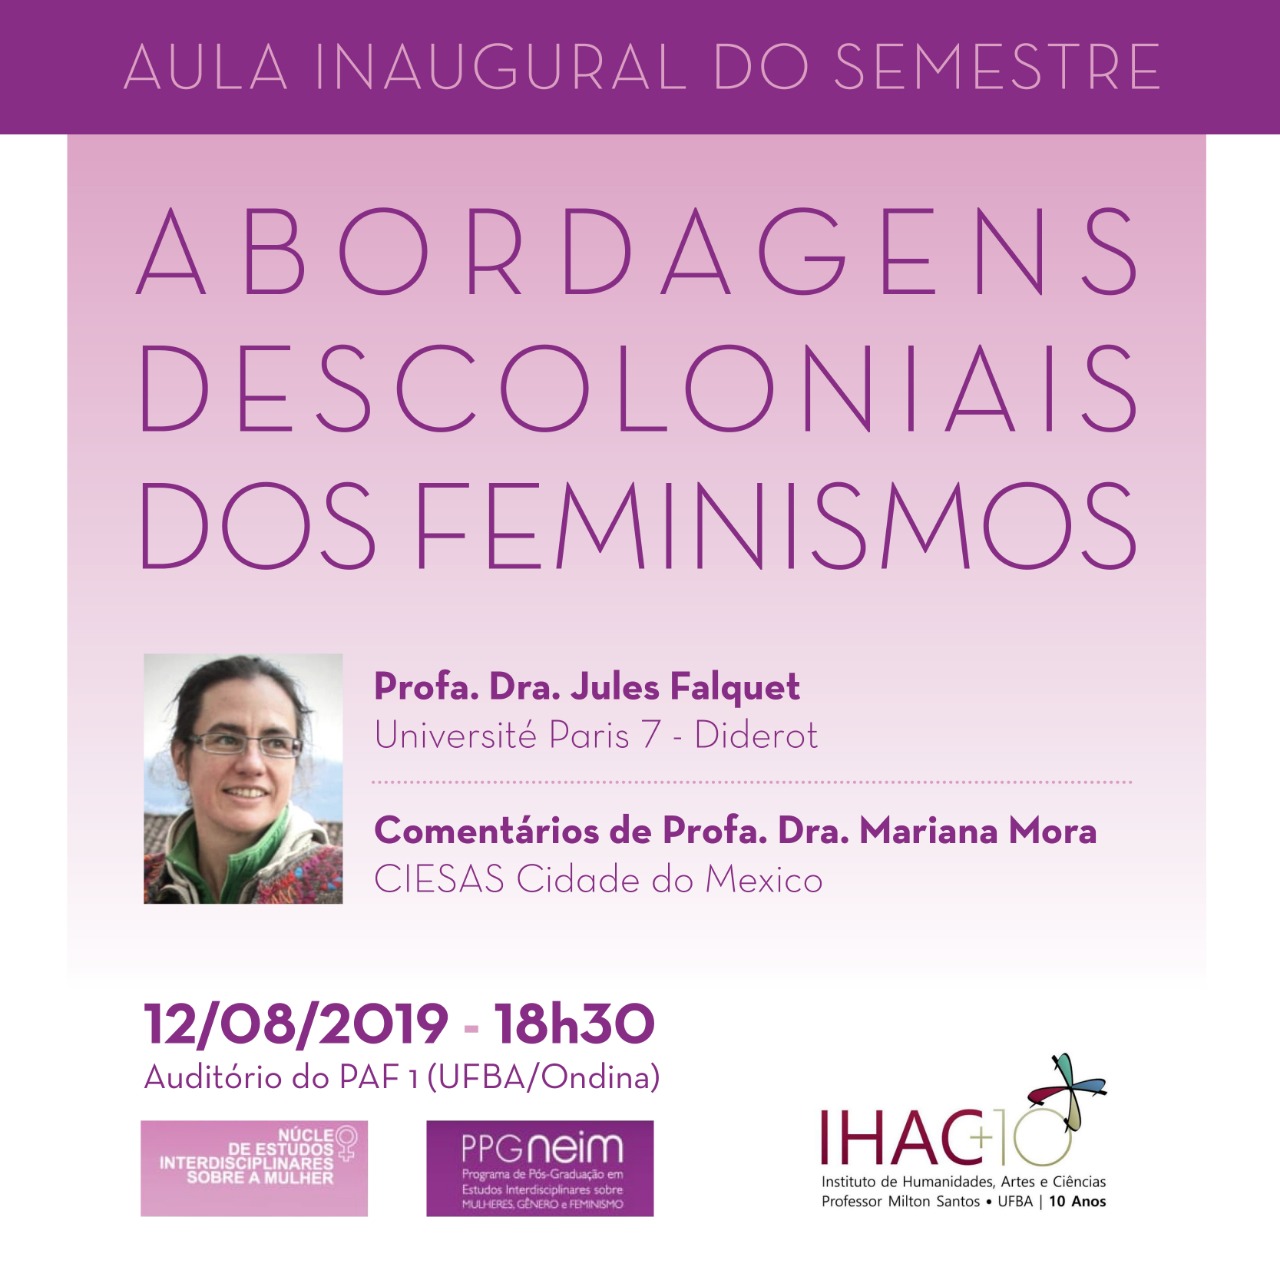 Aula Inaugural do semestre 2019.2 discute abordagens descoloniais dos feminismos